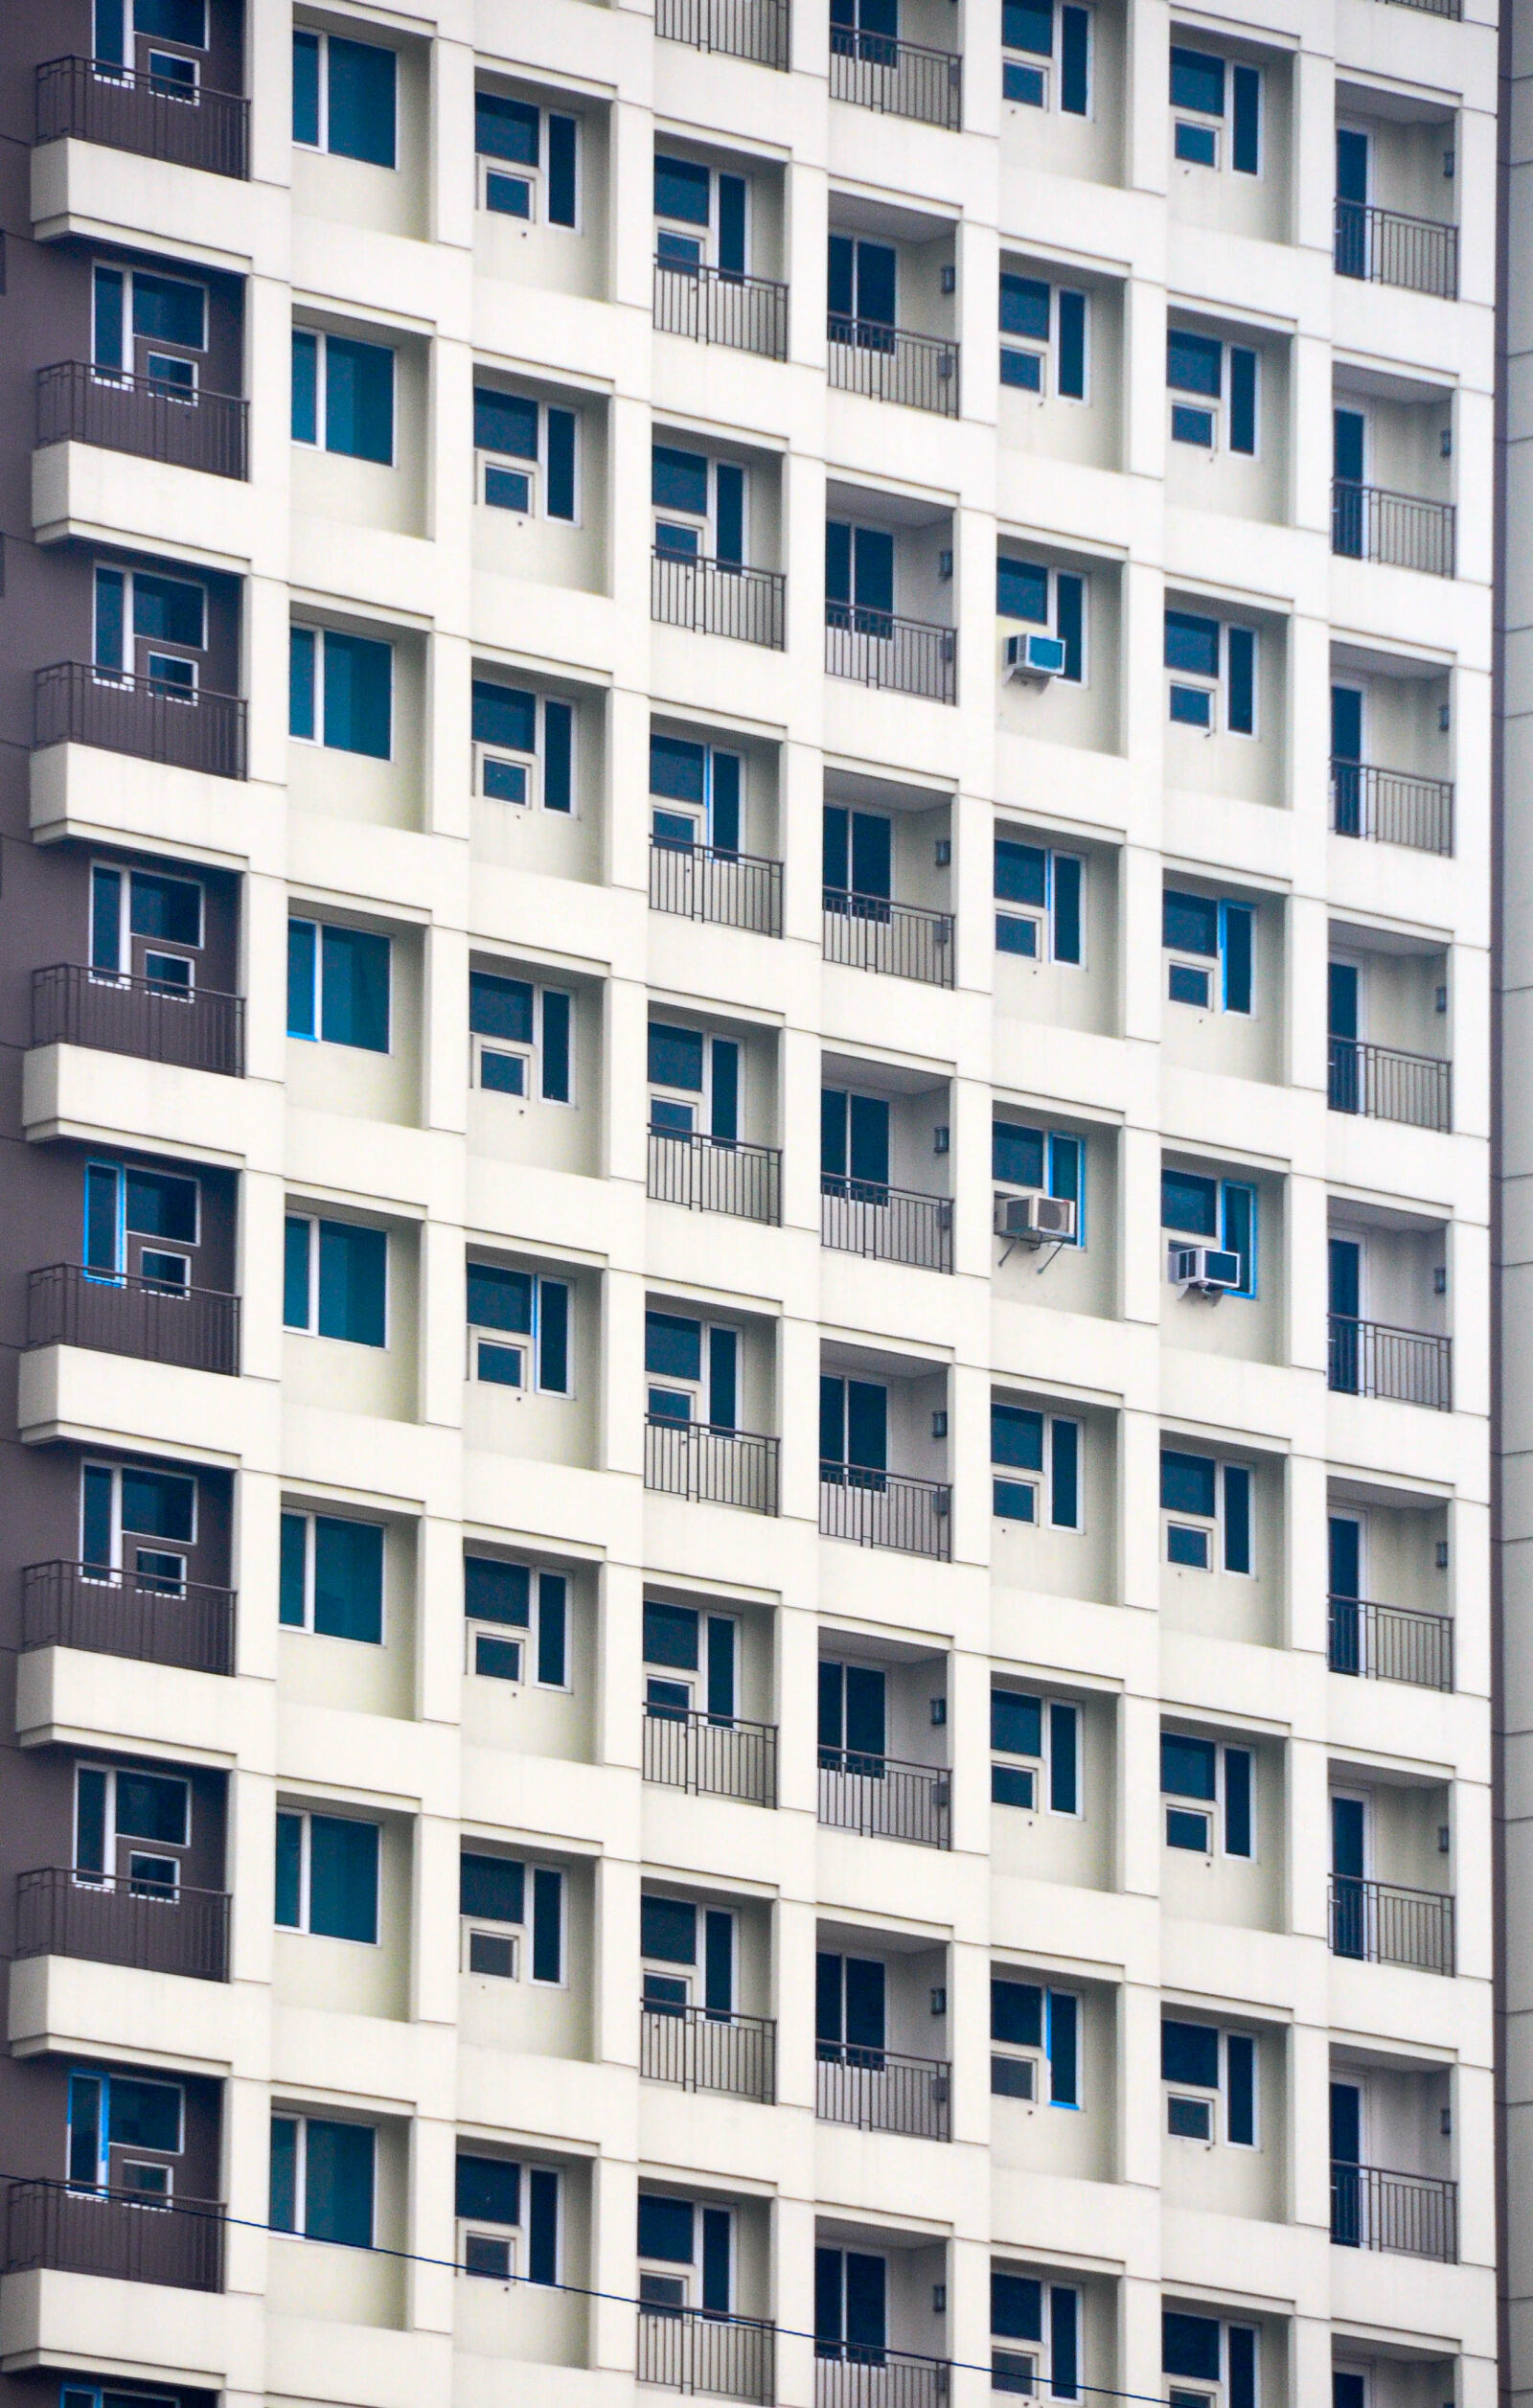 Nikon D90 sample photo. Apartment, buildings, building, building photography